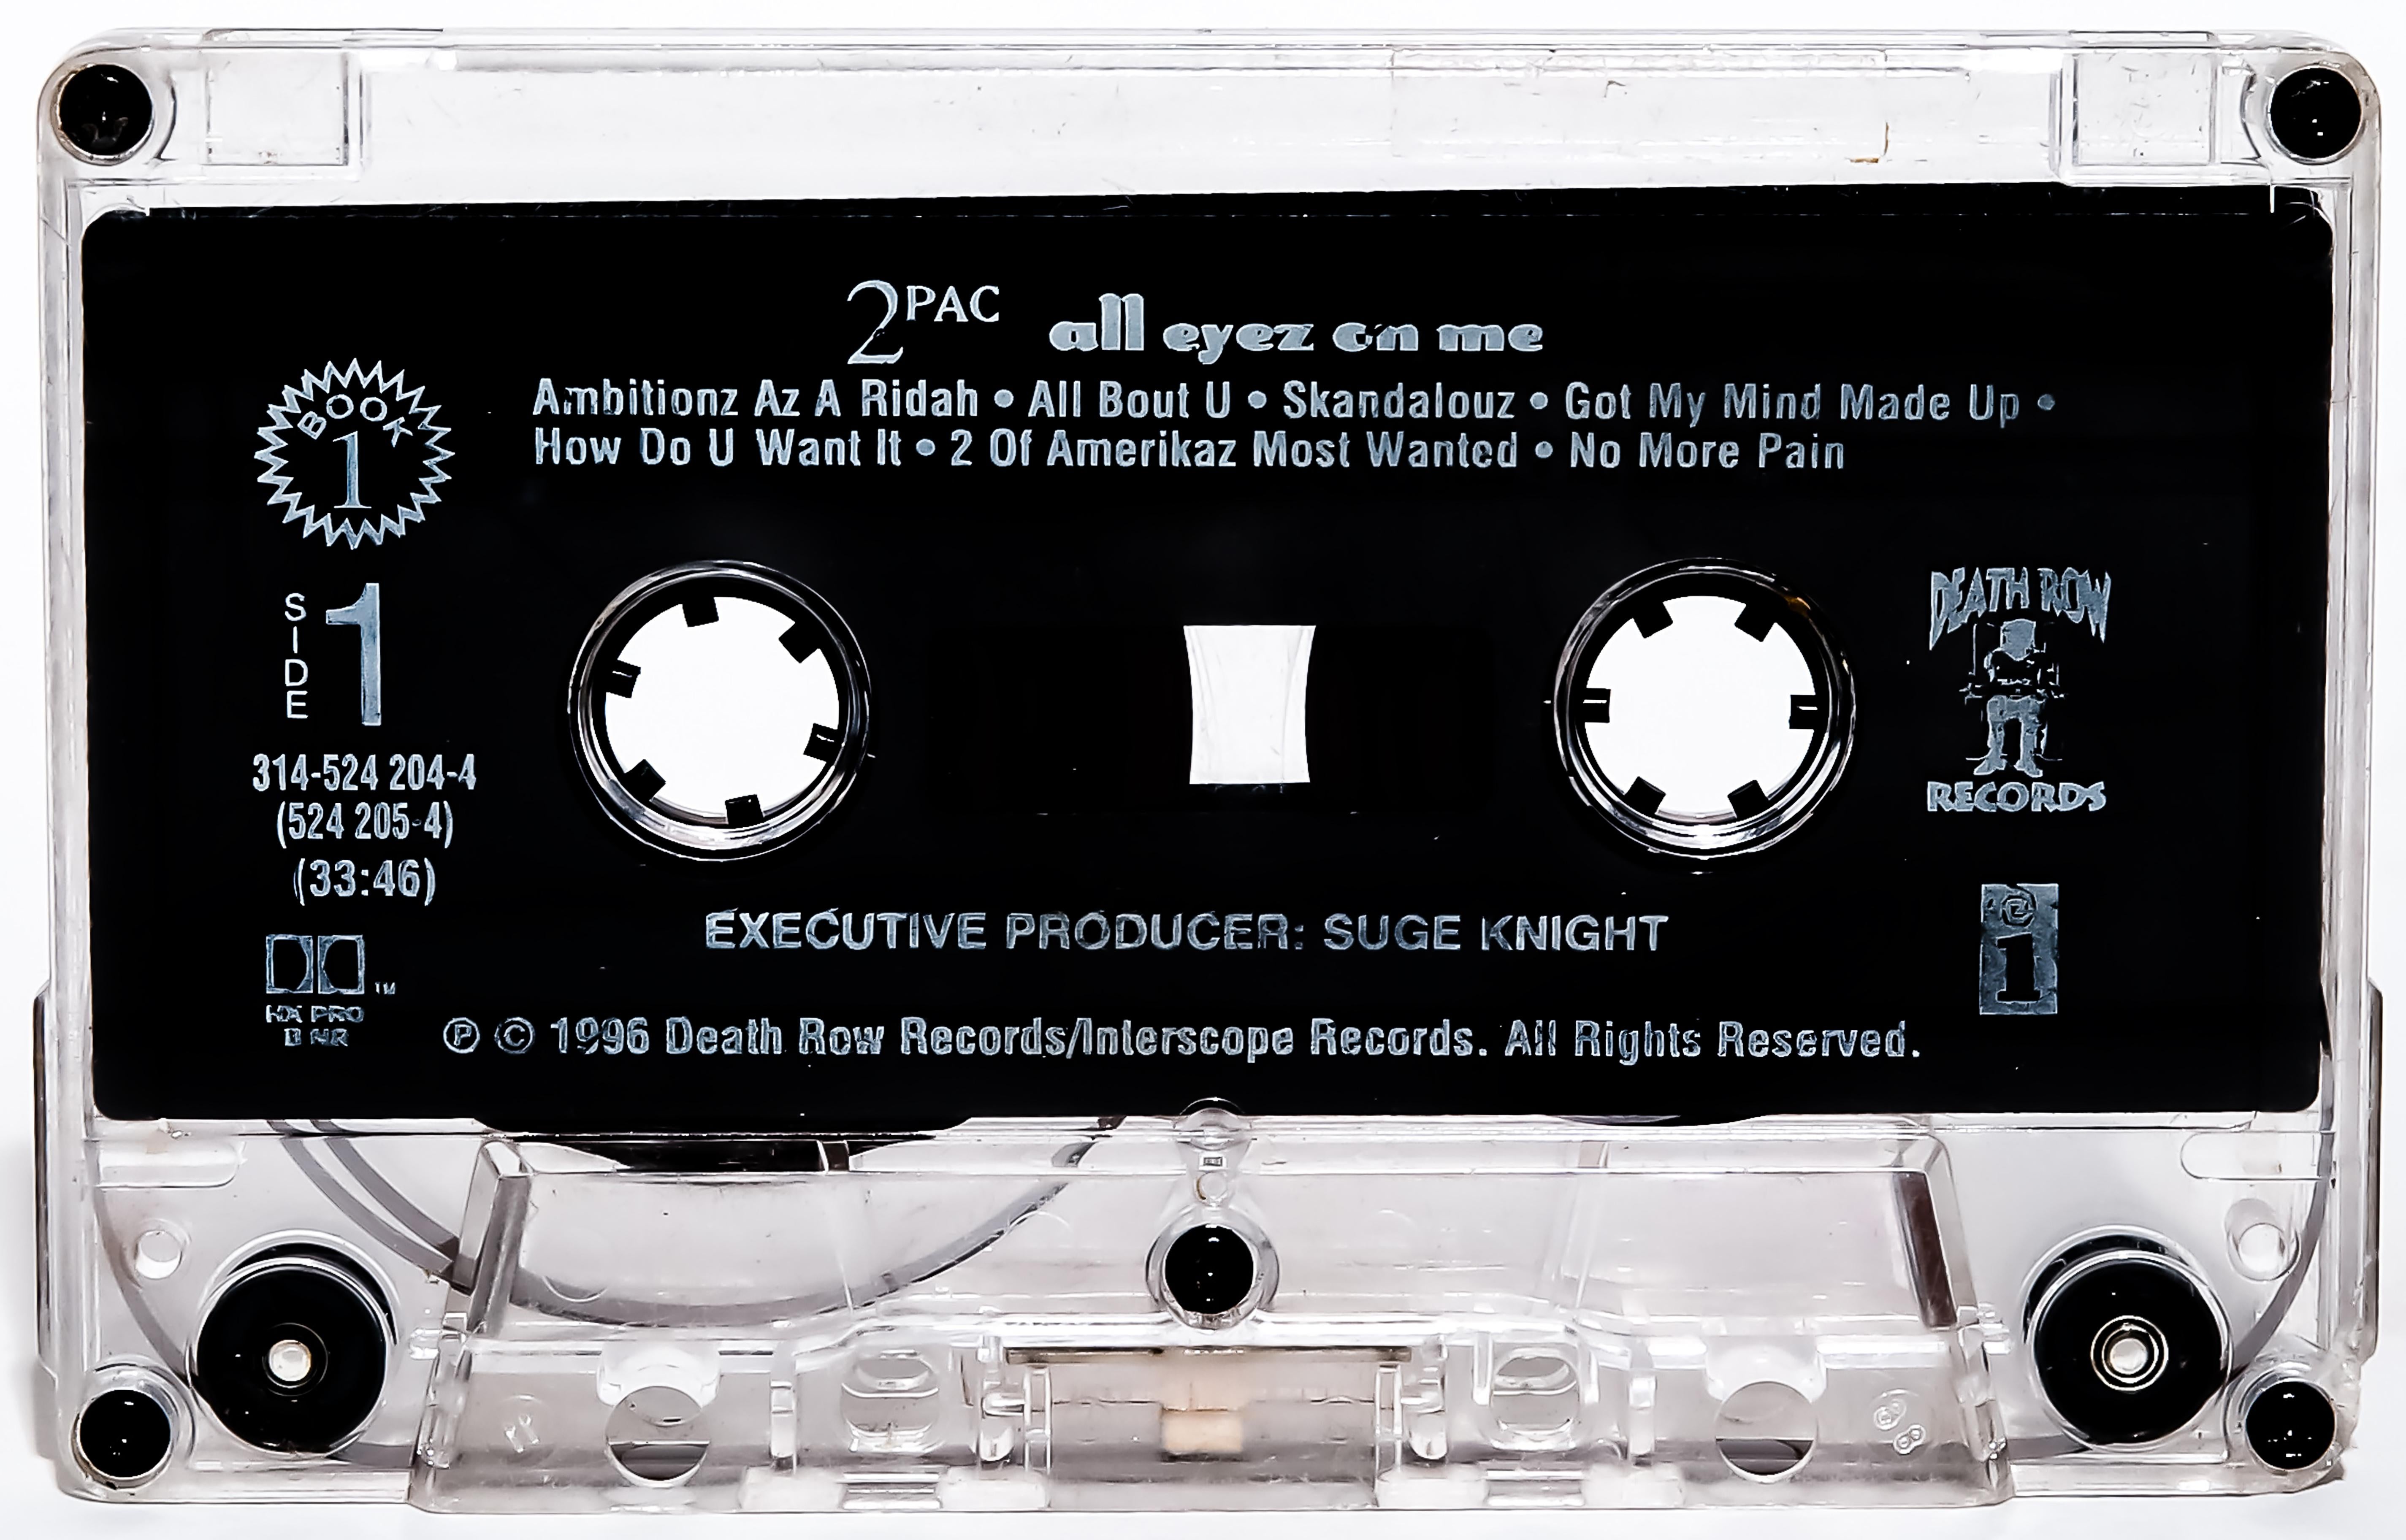 Destro Color Photograph - 28x40 Tupac Shakur 2pac "All Eyez On Me" Cassette Photography Pop Art Unsinged